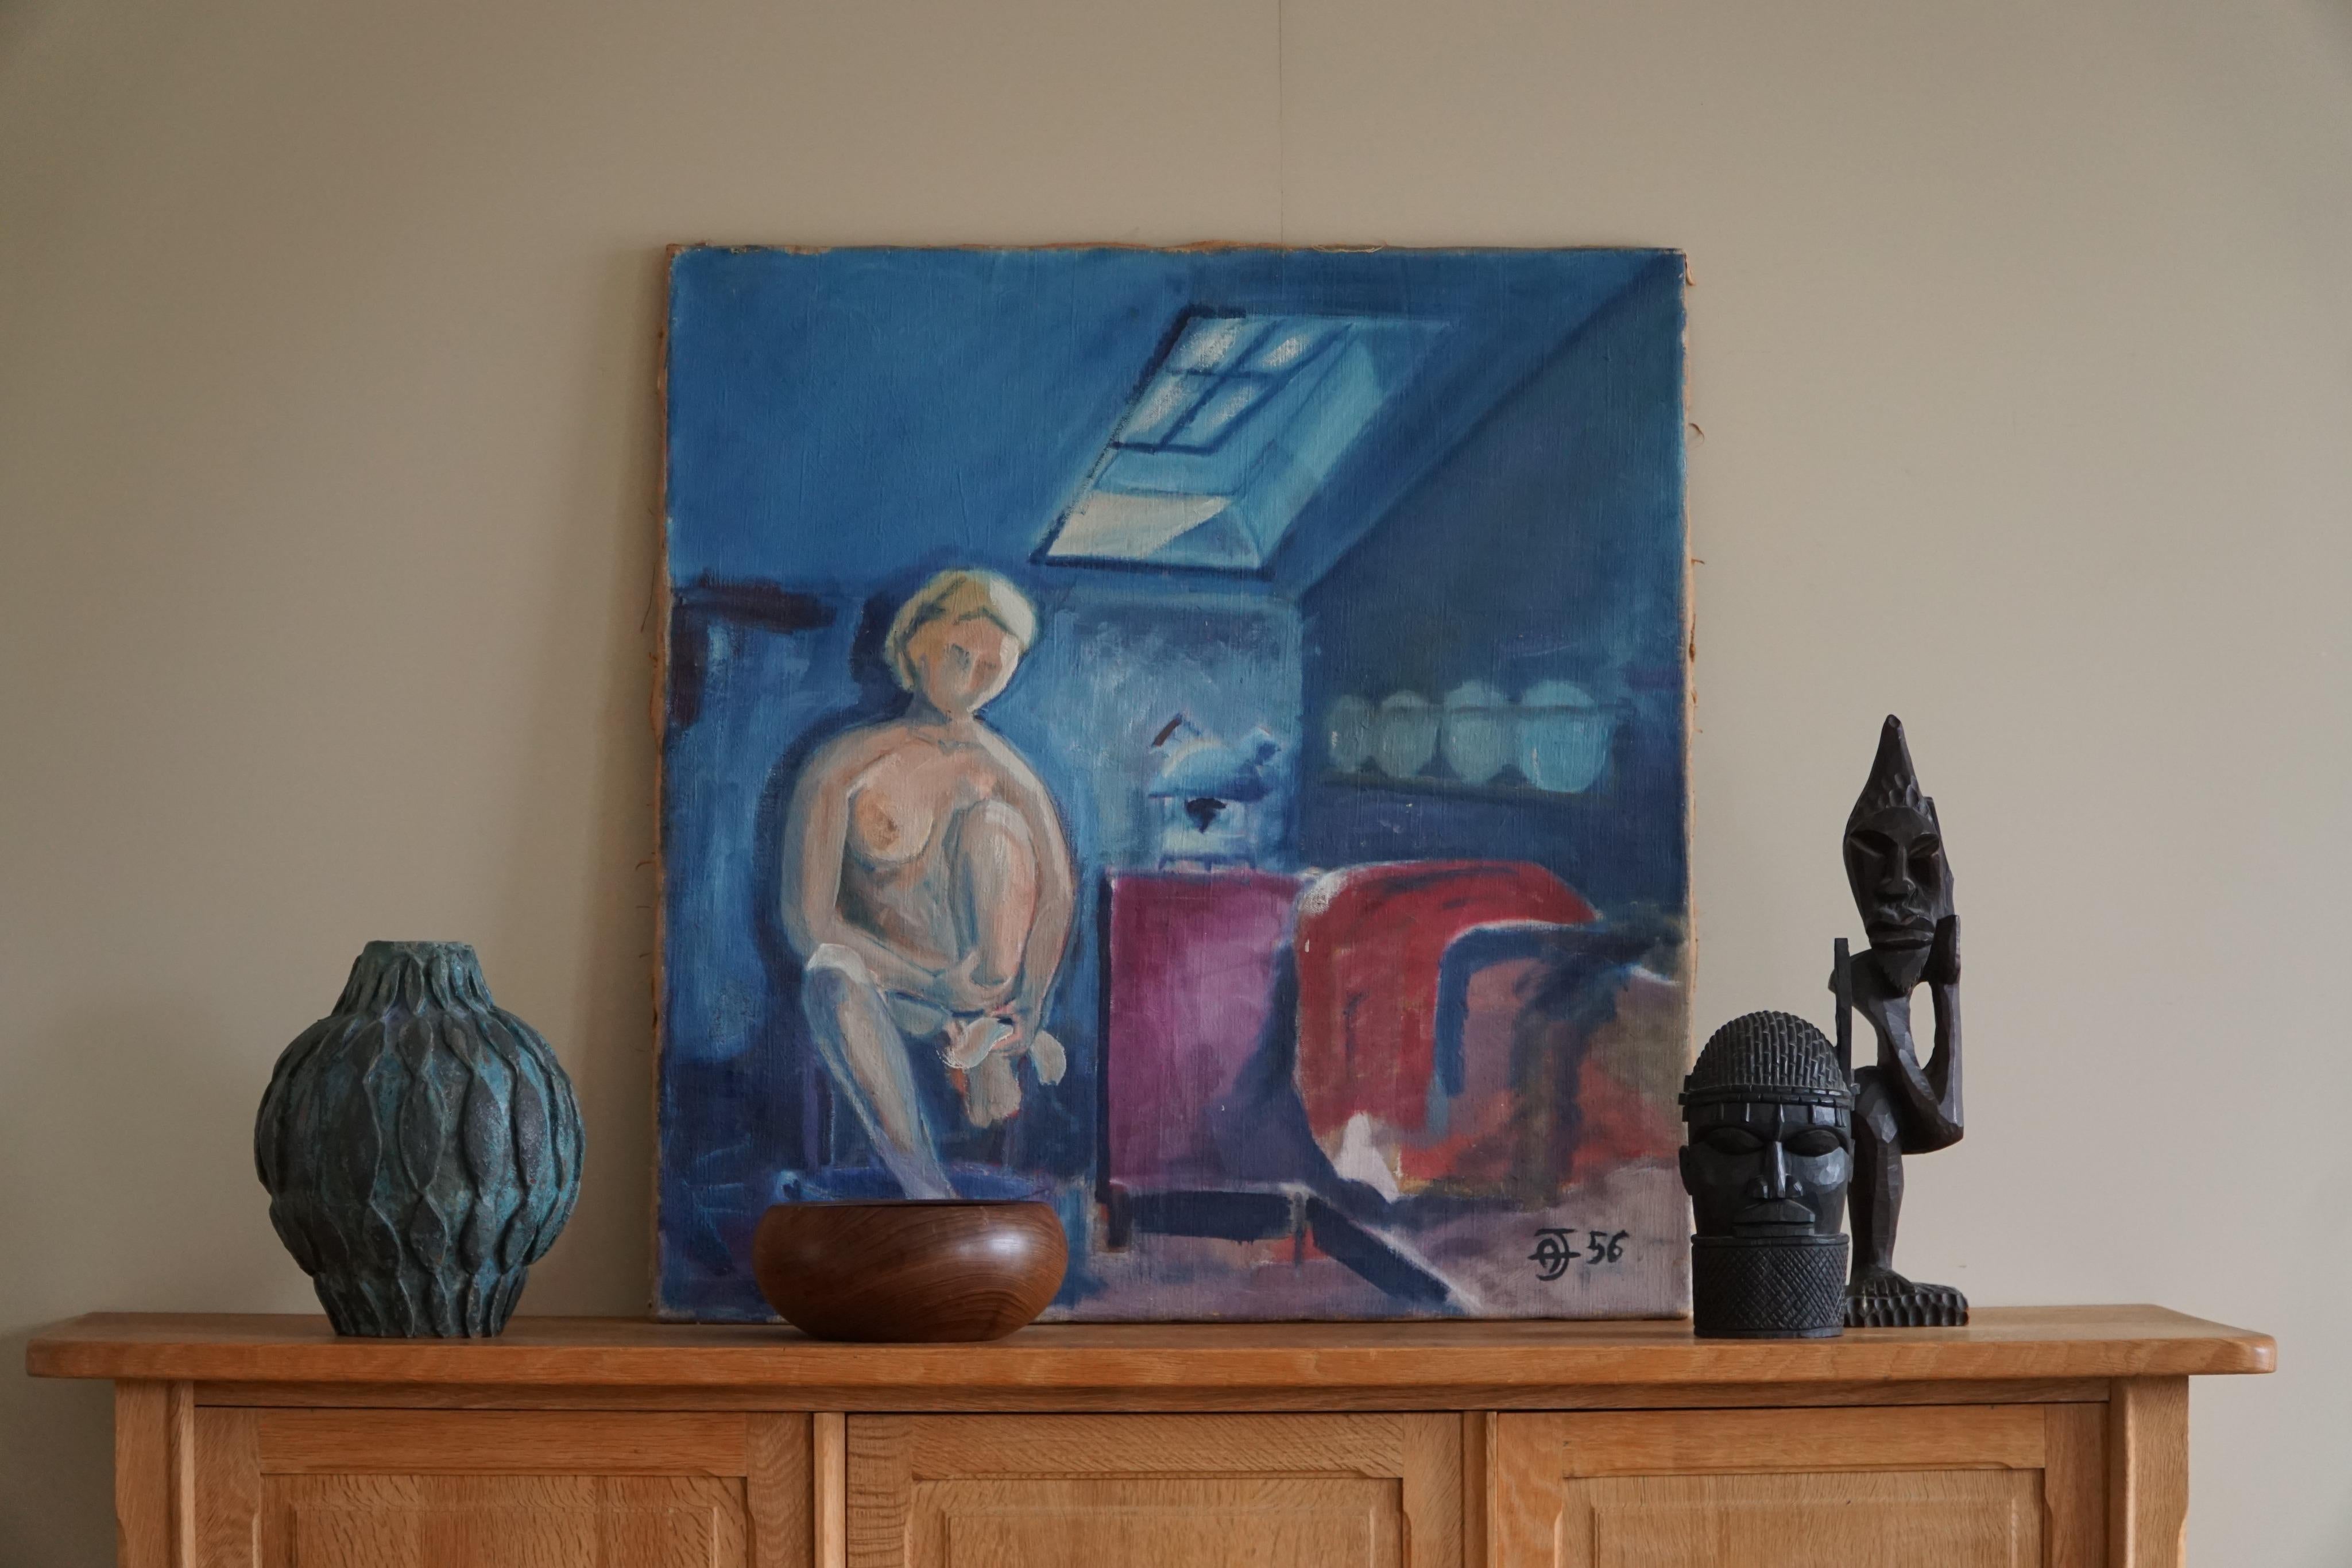 Wir präsentieren ein rätselhaftes Ölgemälde auf Leinwand von einem unbekannten dänischen Künstler aus dem Jahr 1956. Dieses fesselnde Kunstwerk zeigt eine Frau, die ihre Füße in einem Badezimmer badet, und ist vor allem von einer Palette blauer und